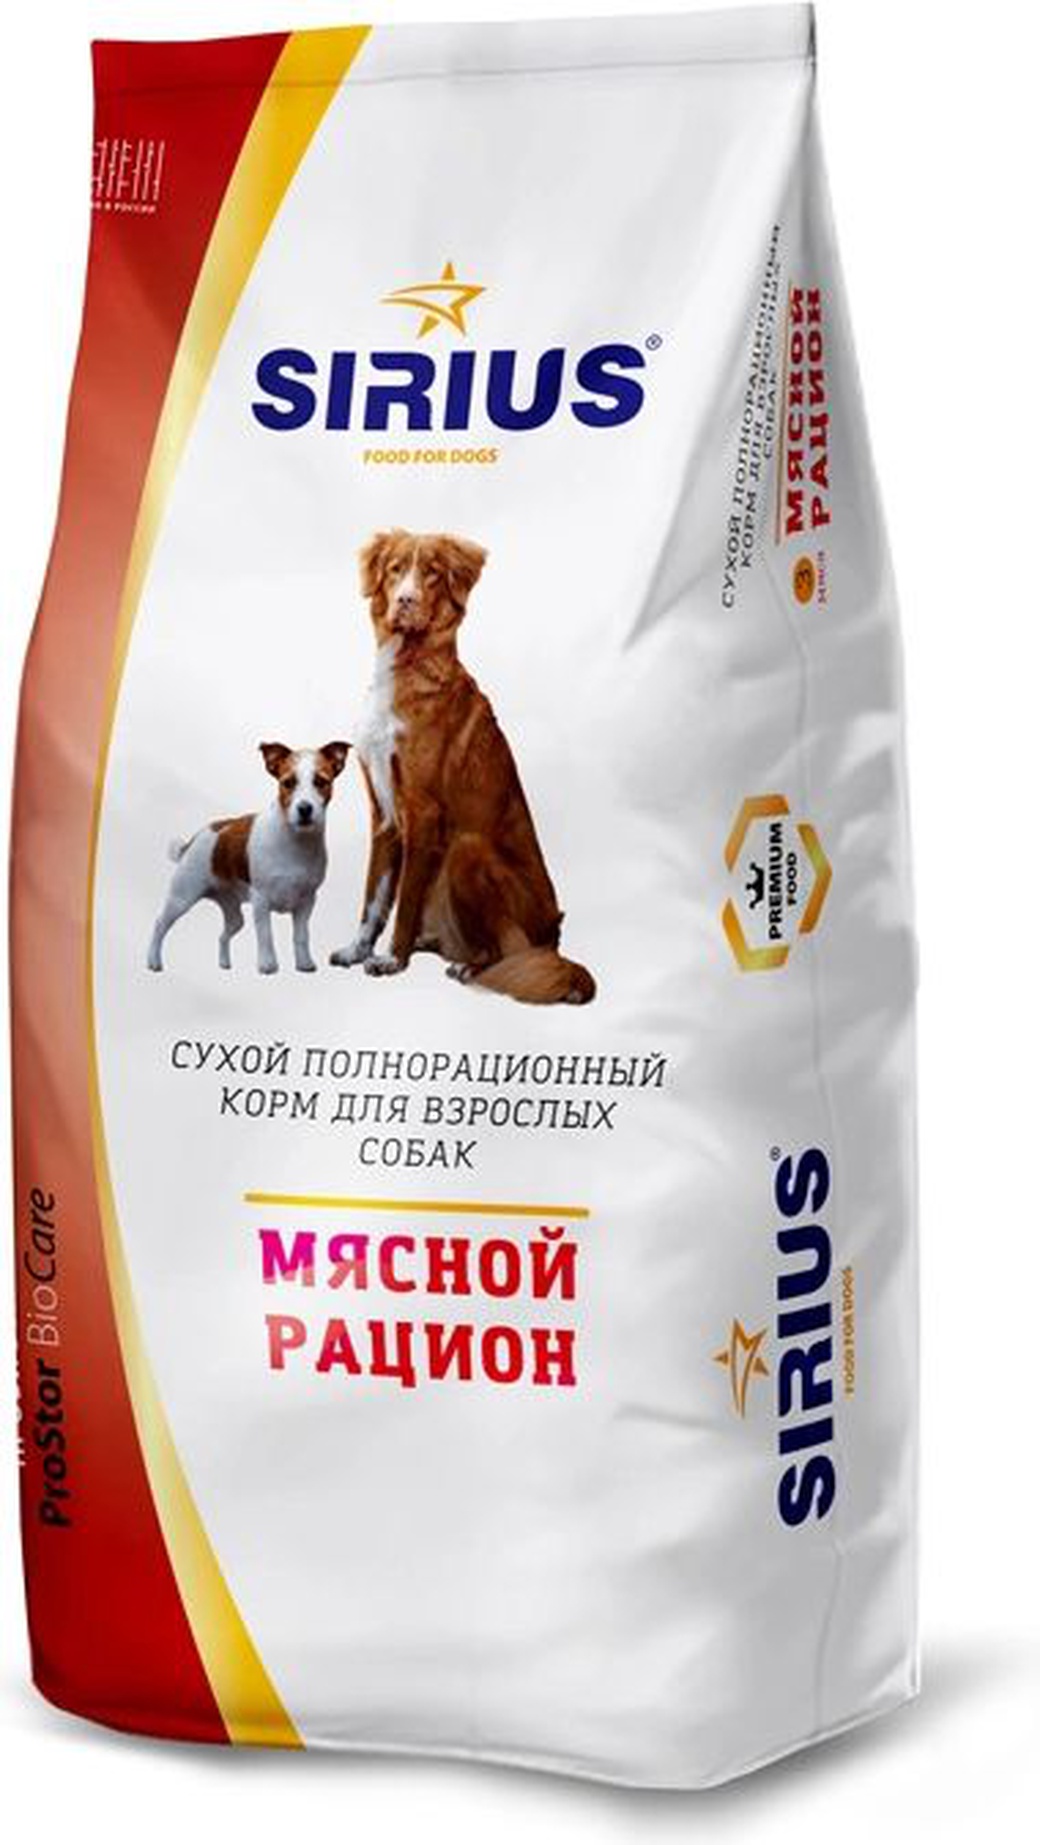 SIRIUS Сухой корм для взрослых собак Мясной рацион, 20 кг фото